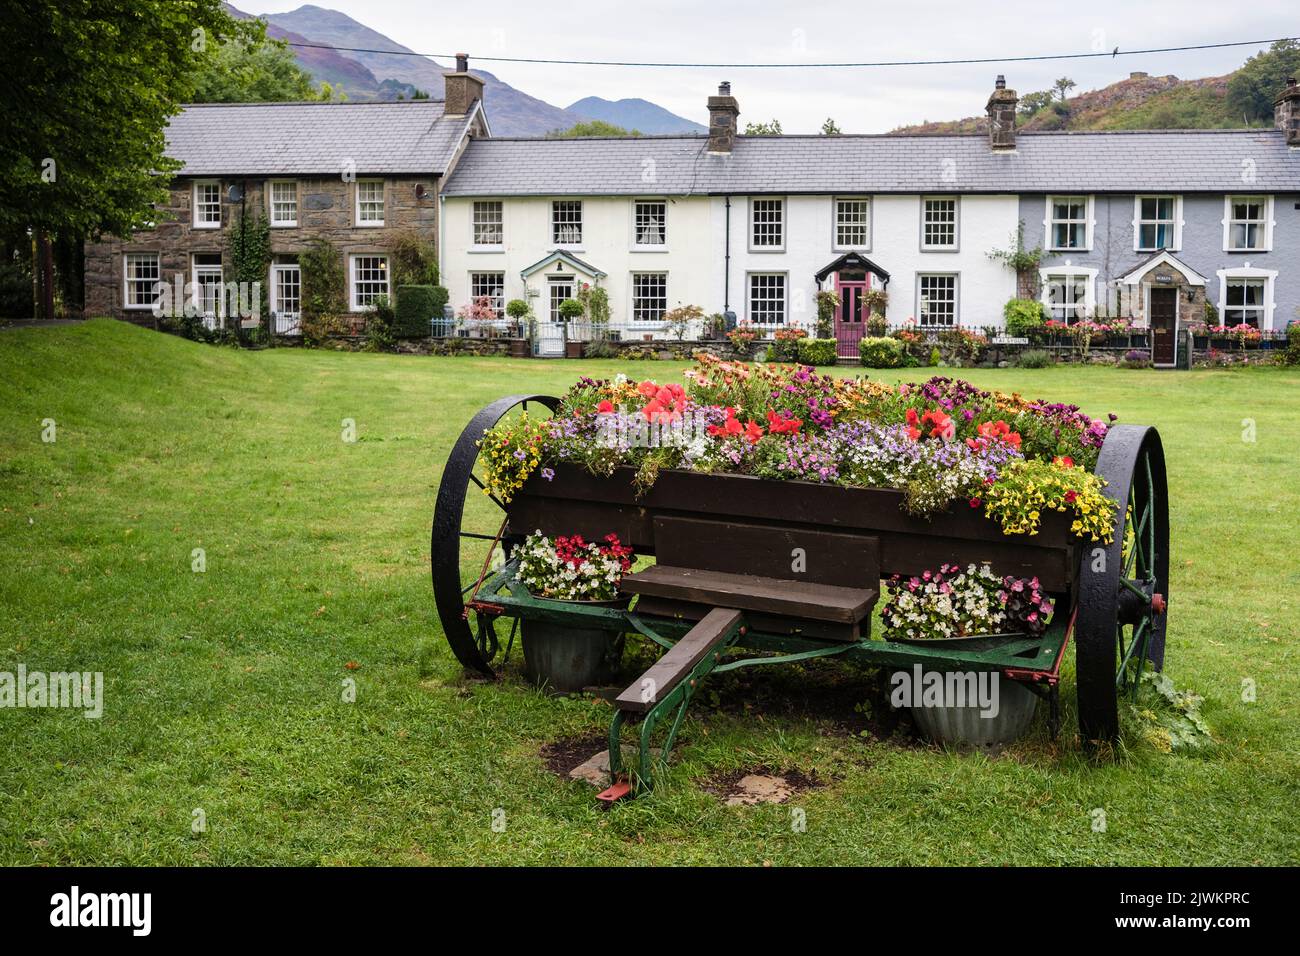 Contenedor de flores en el pueblo verde con tradicionales casas de campo galesas en verano en el Parque Nacional de Snowdonia. Beddgelert Gwynedd Norte de Gales Reino Unido Gran Bretaña Foto de stock